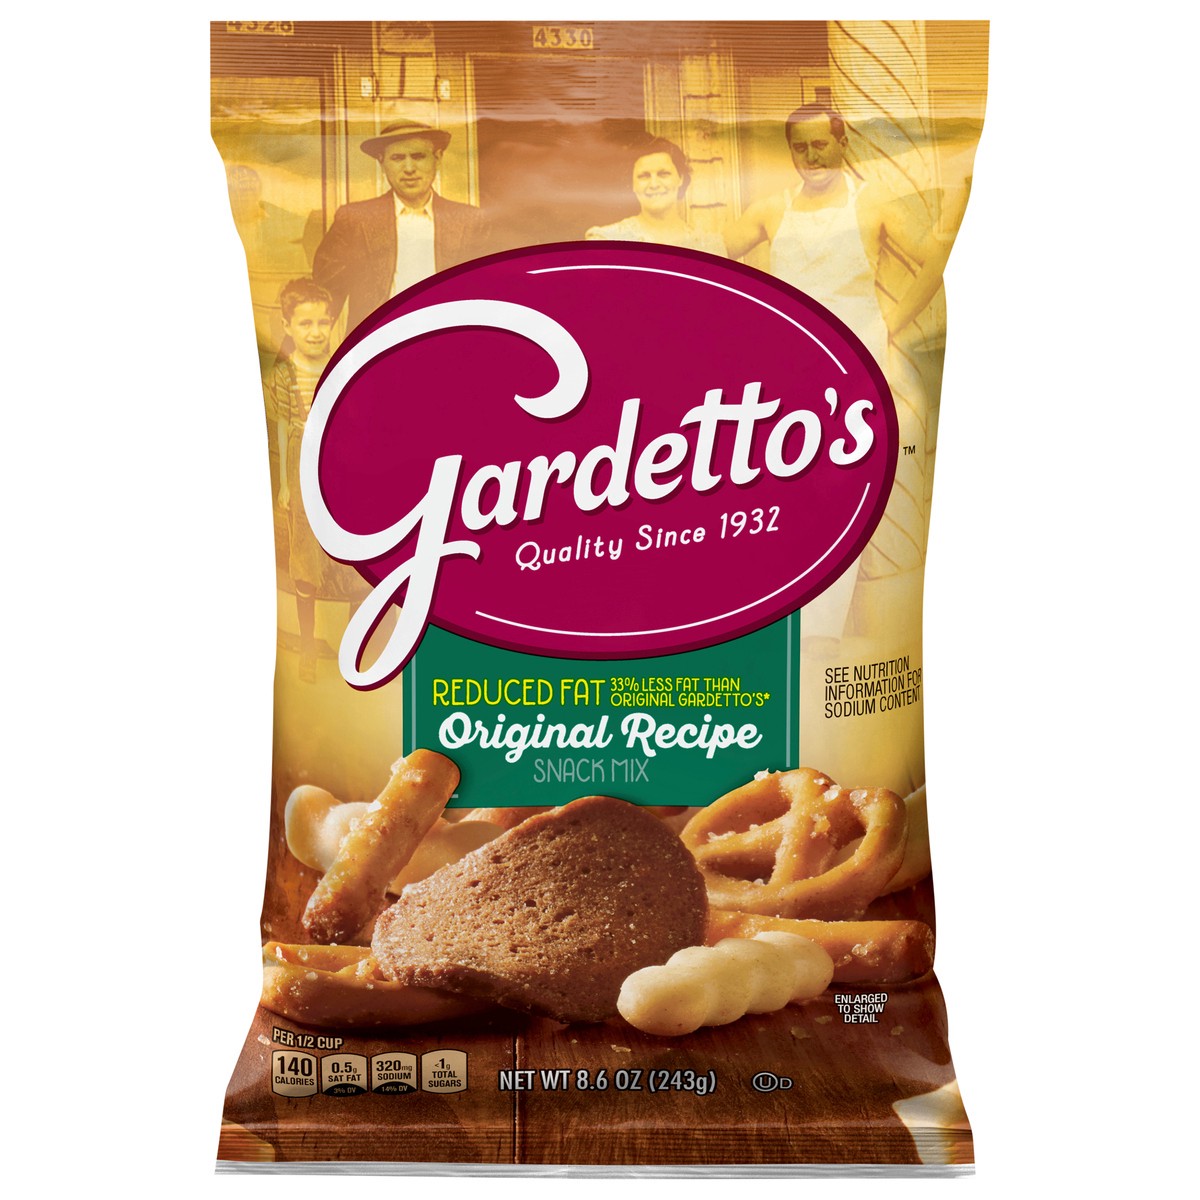 slide 1 of 14, Gardetto's, Snack Mix, Original Recipe, Reduced Fat, 8.6 oz. Bag, 8.6 oz